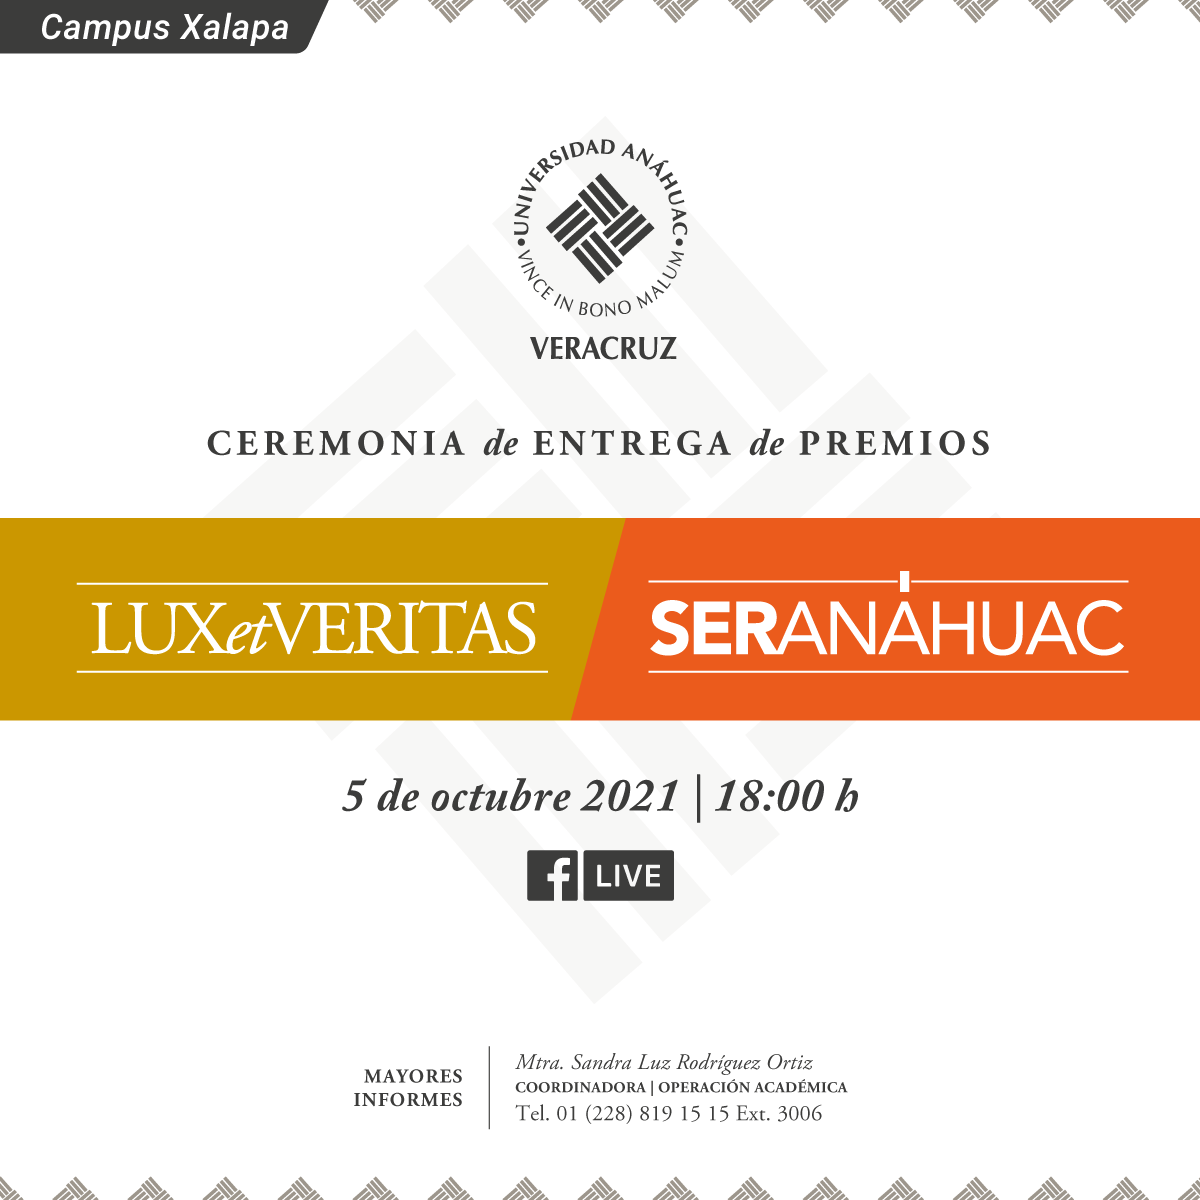 Ceremonia de Entrega de Premios Lux et Veritas y Ser Anáhuac